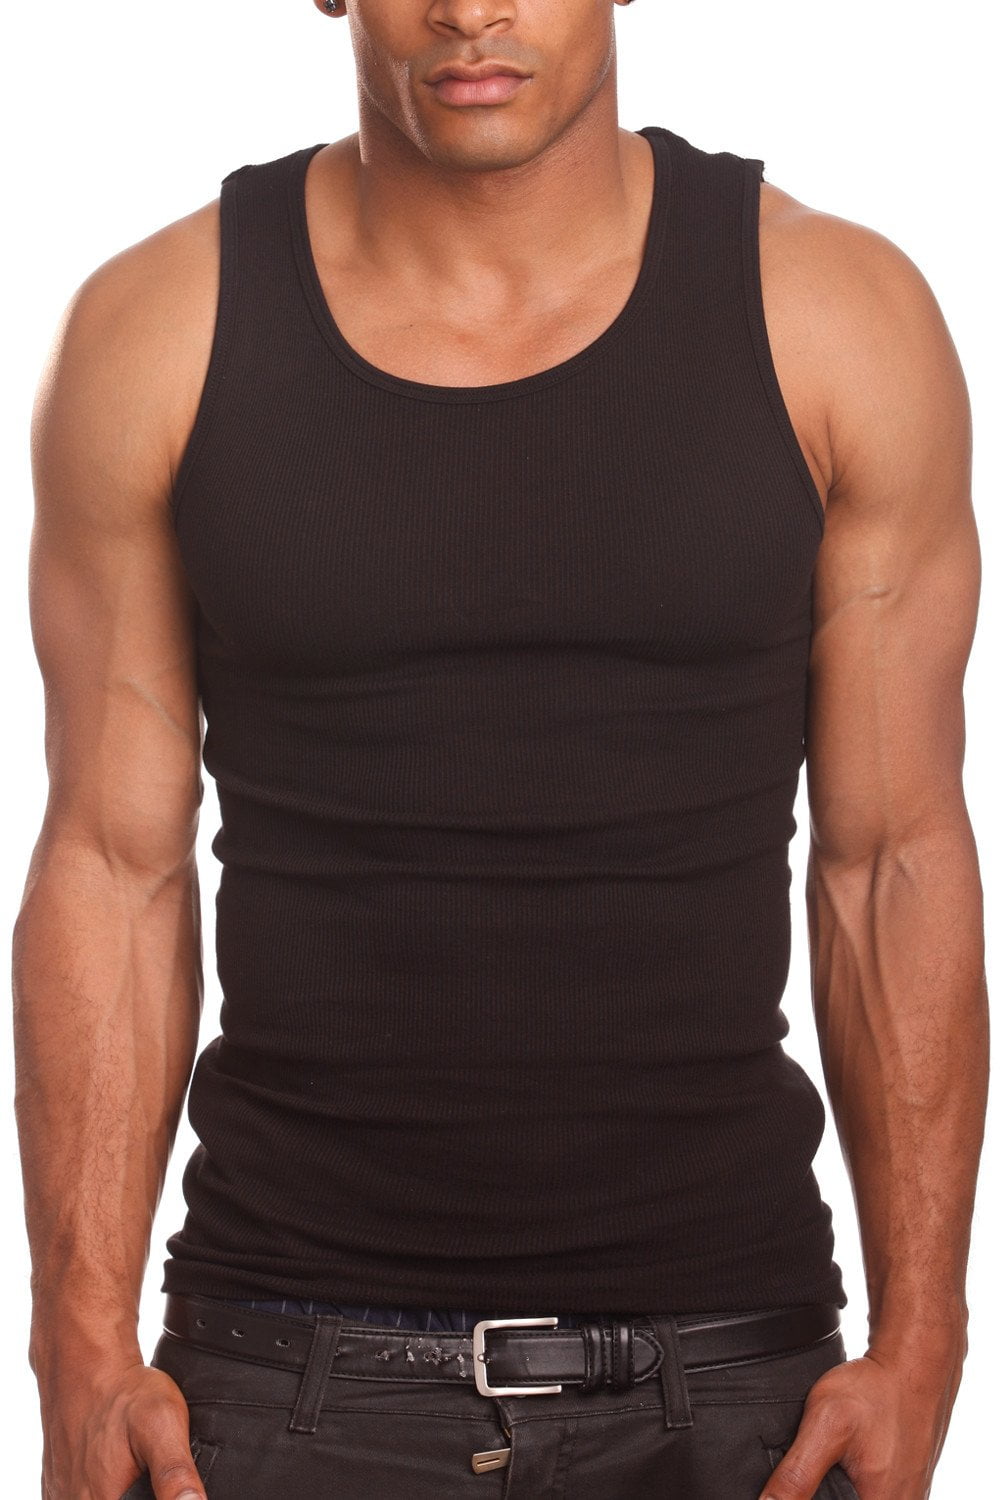 Hanes Men's Value Pack Black/Grey Tank Undershirts, 6 Pack